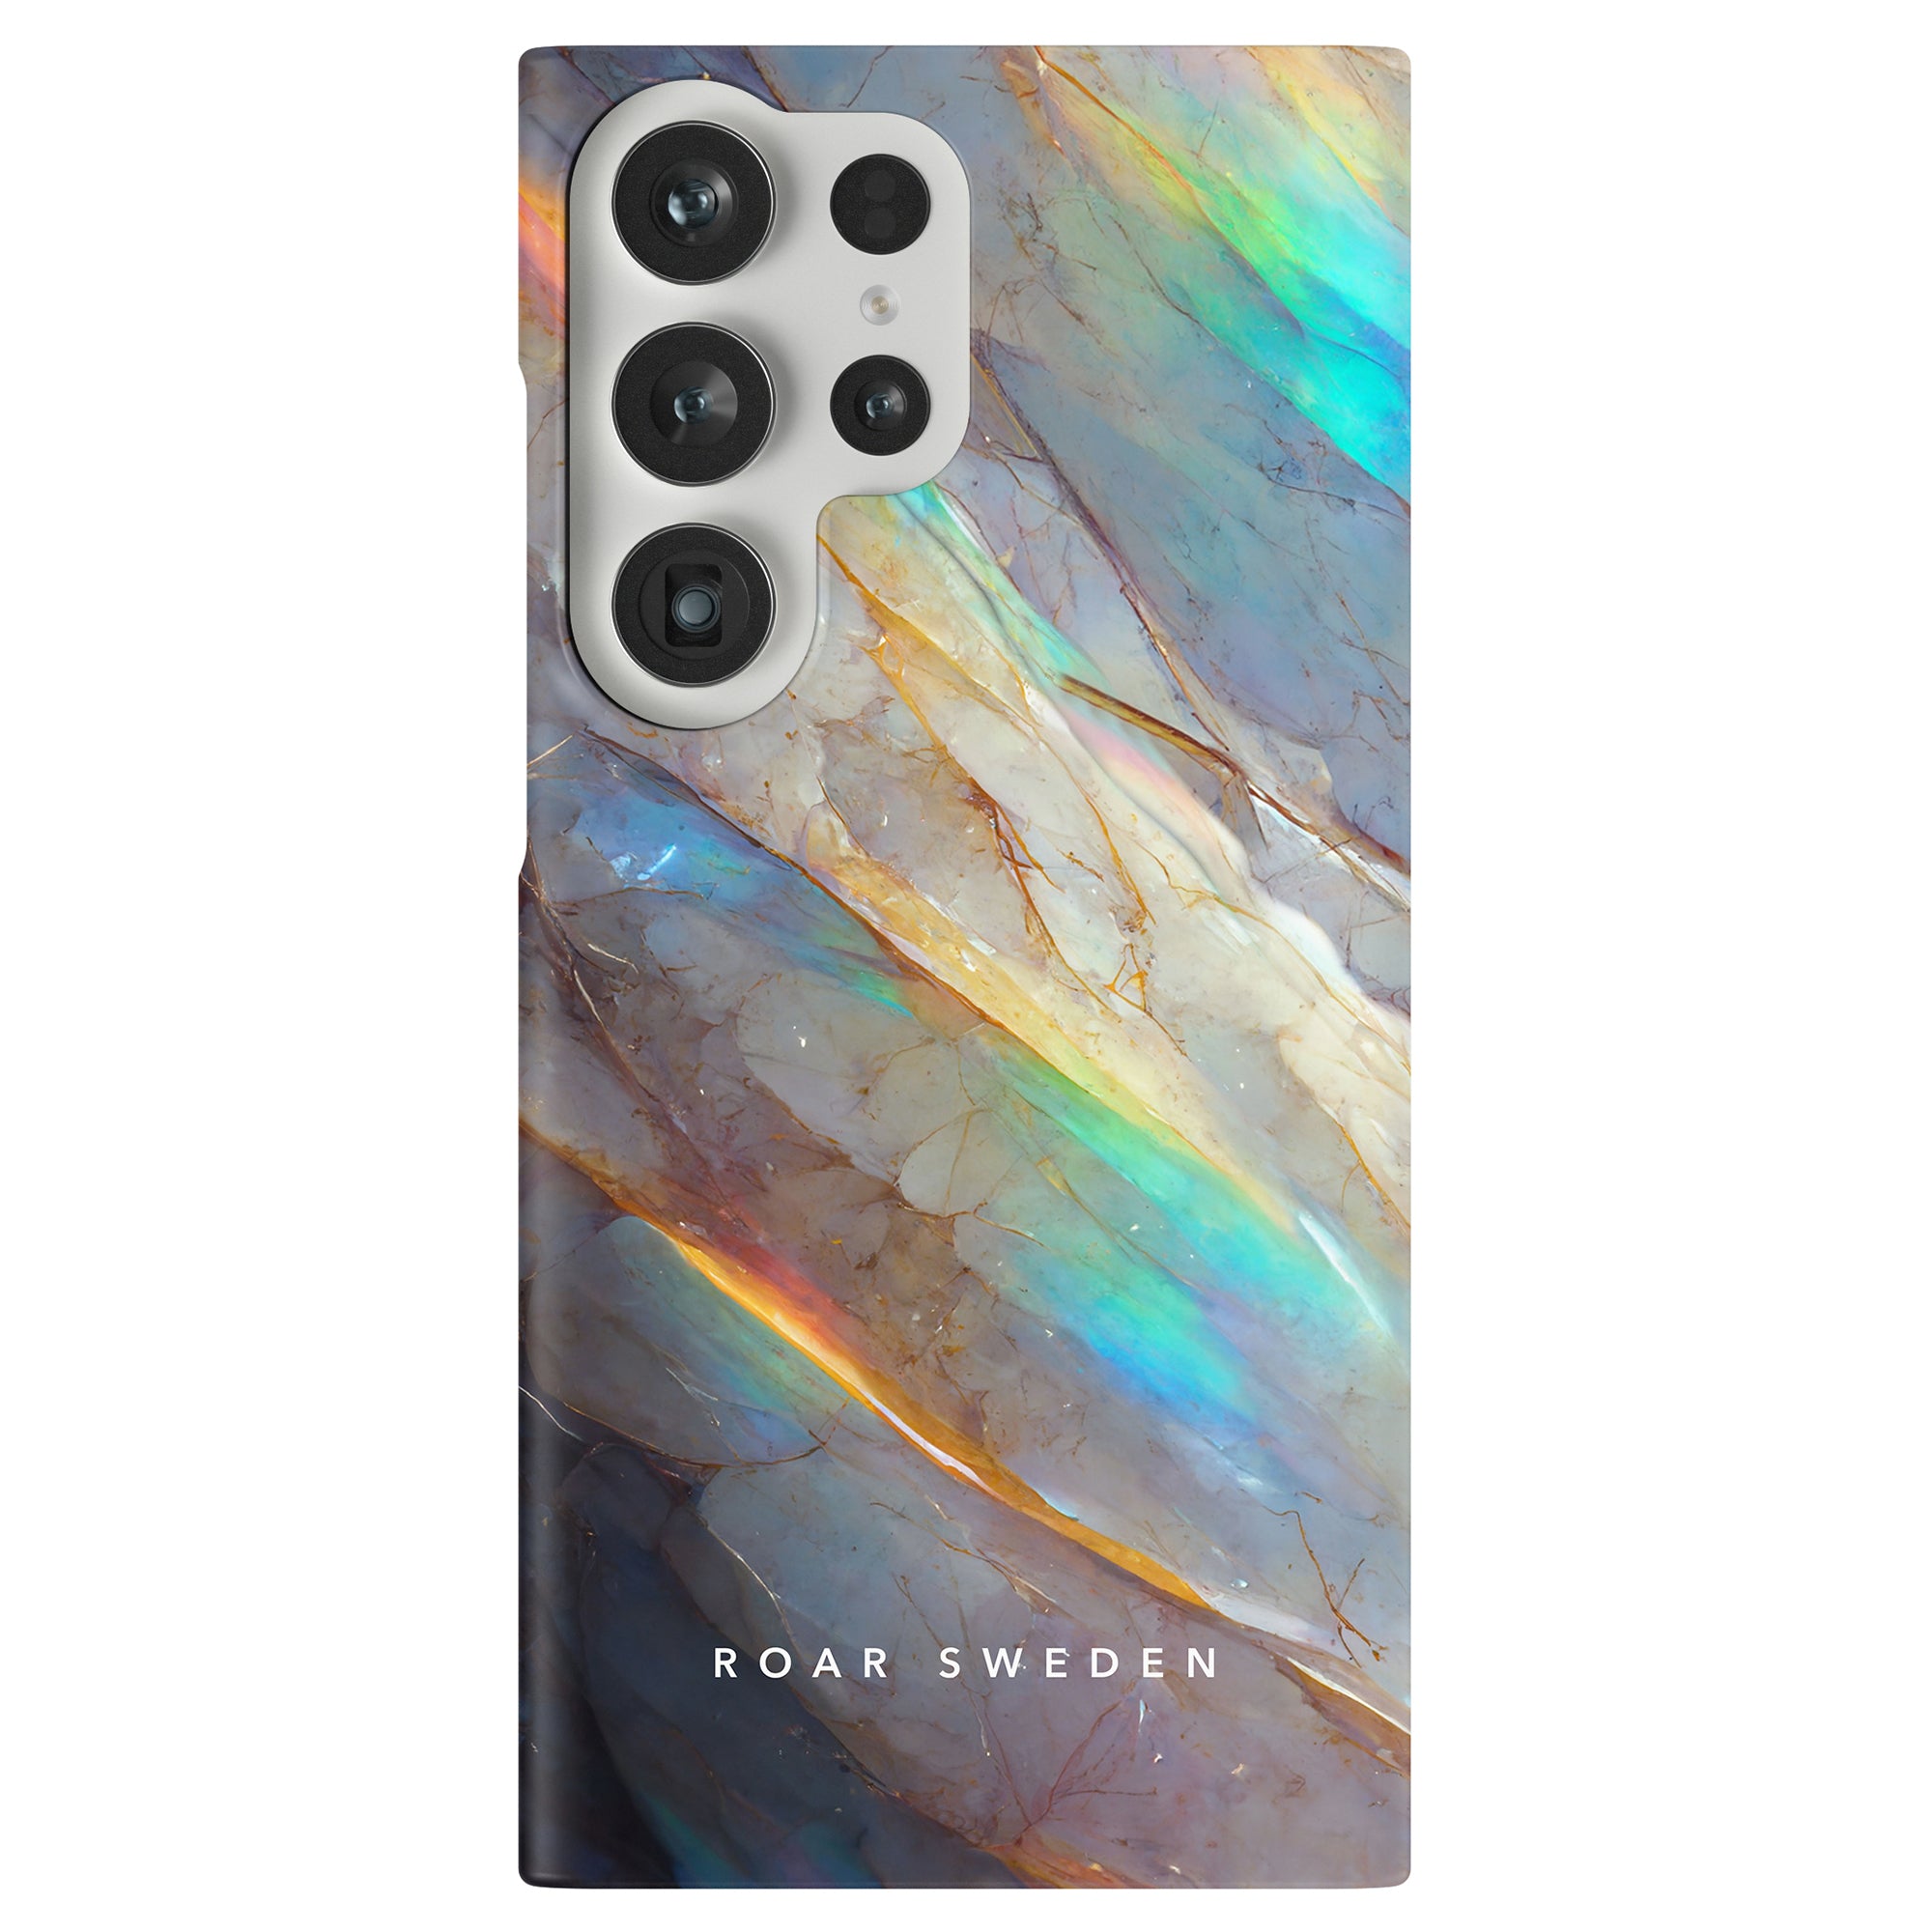 Ett Crystal - Slimt fodral designat för att skydda en mobiltelefon, med en livfull regnbågsfärgad marmordesign.